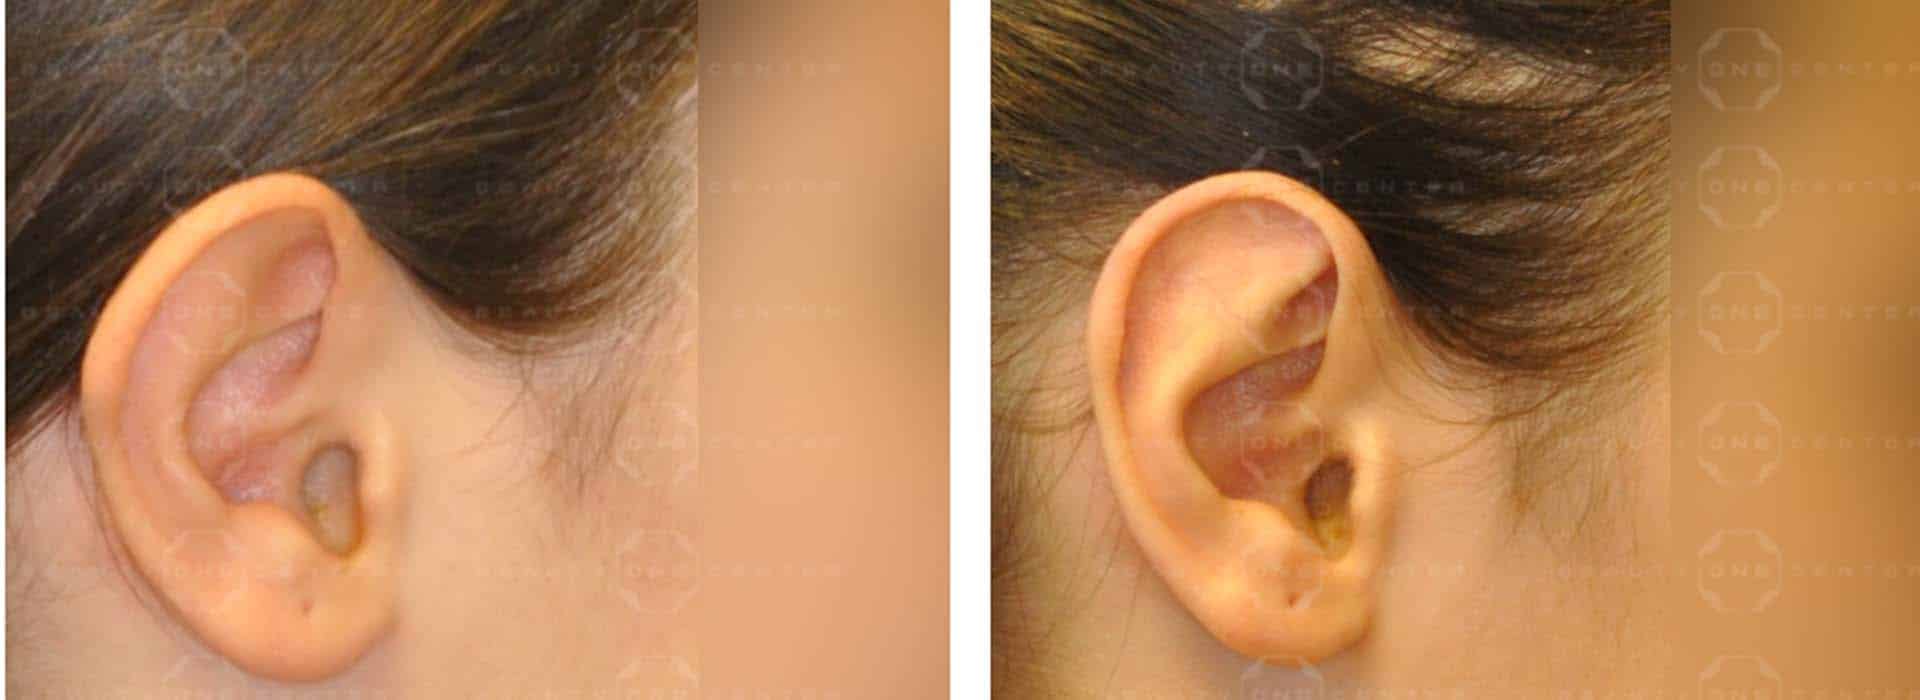 Operación de orejas antes y después